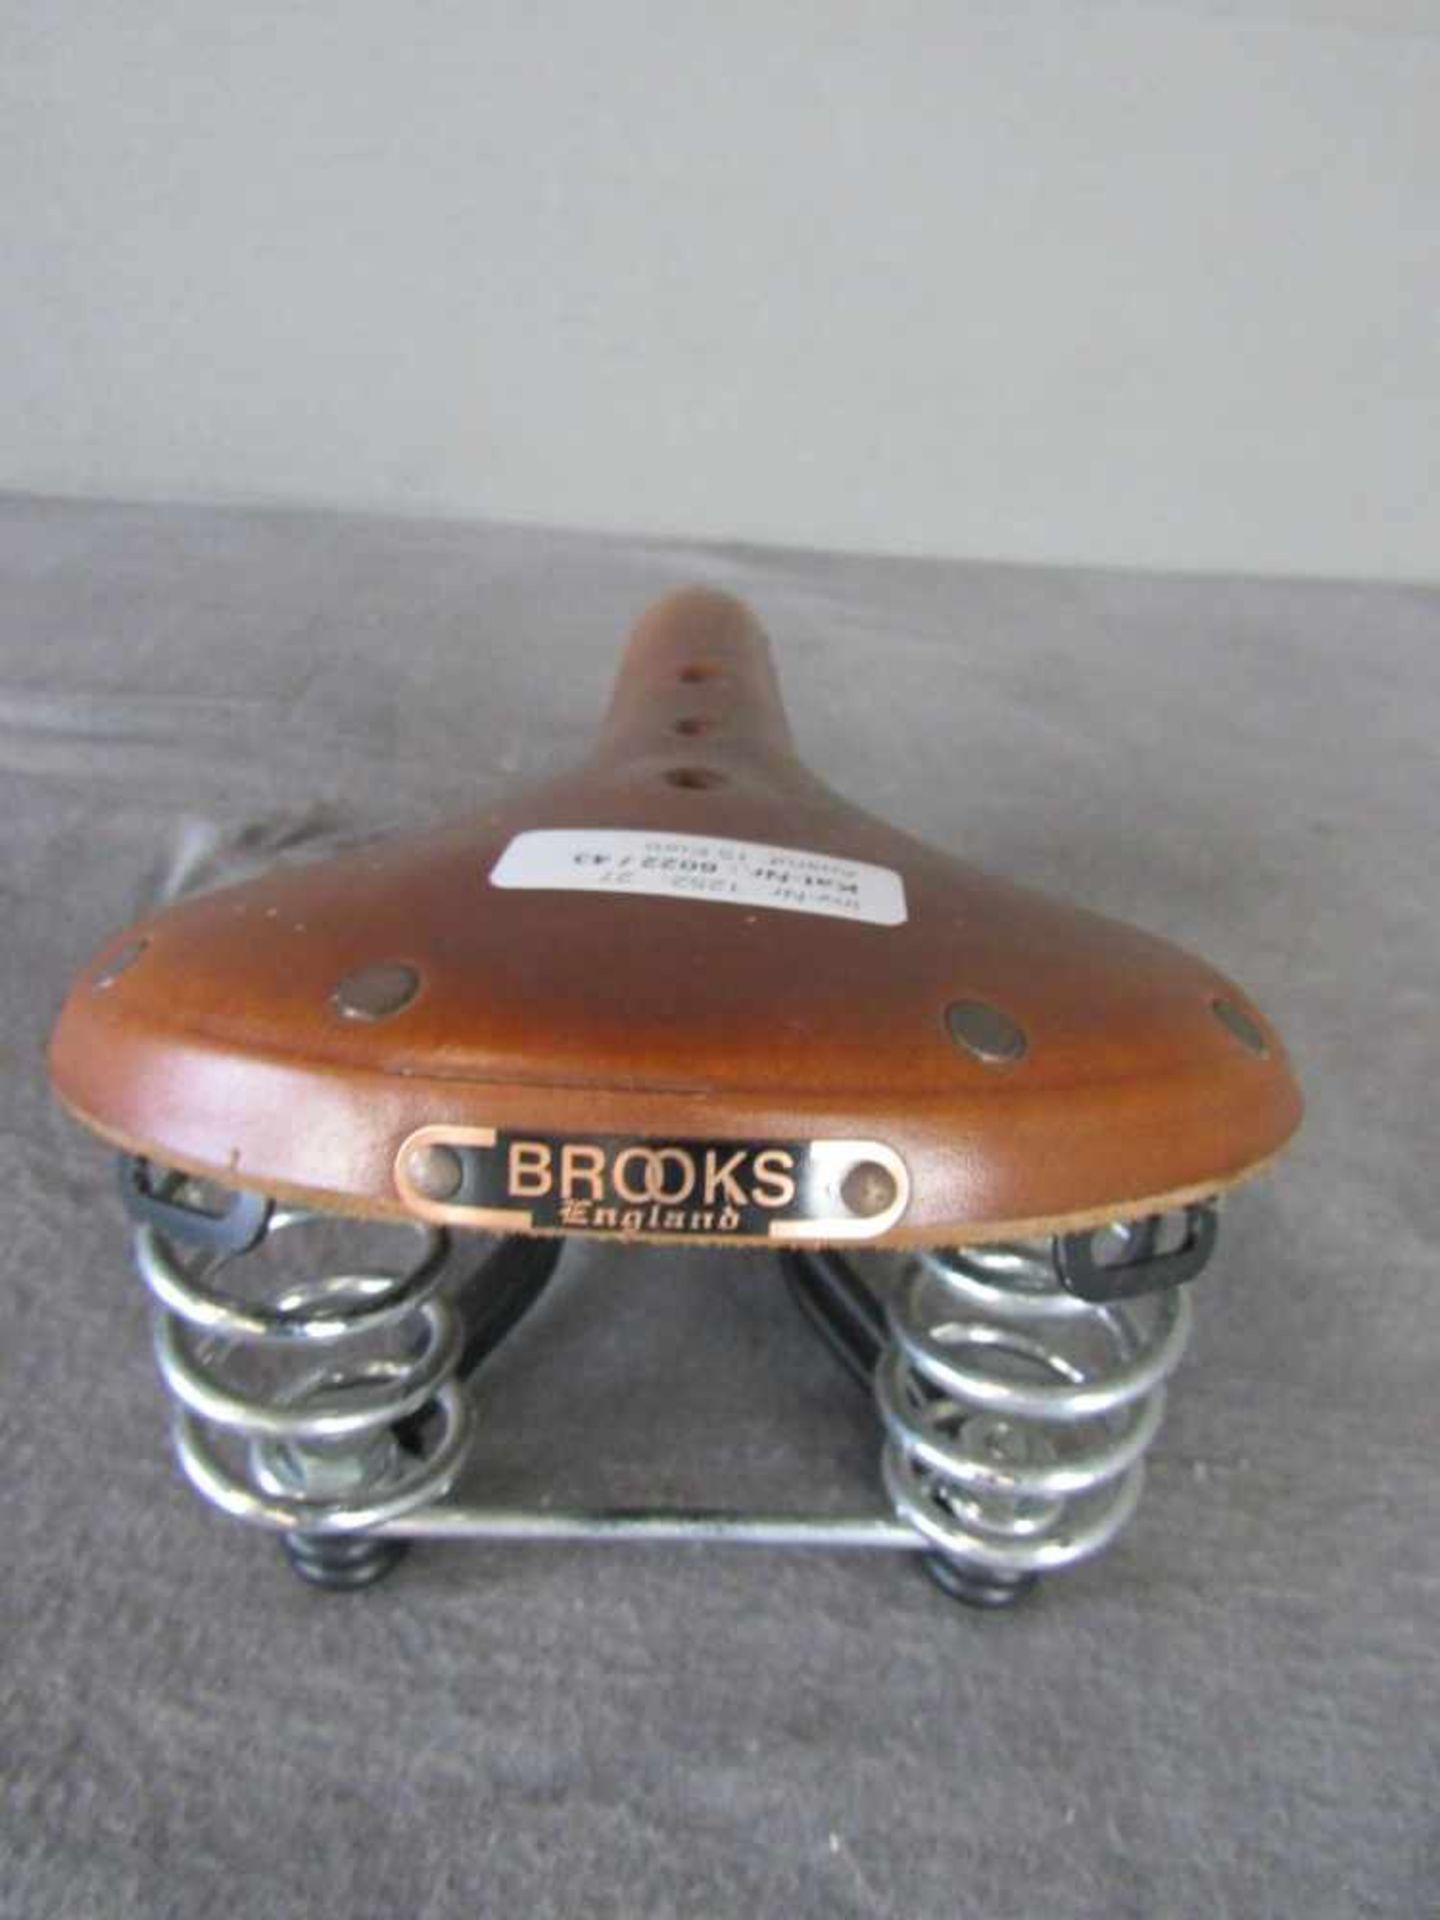 Vintage Fahrradsattel Brooks England unbenutzt- - -20.00 % buyer's premium on the hammer price19. - Bild 4 aus 4